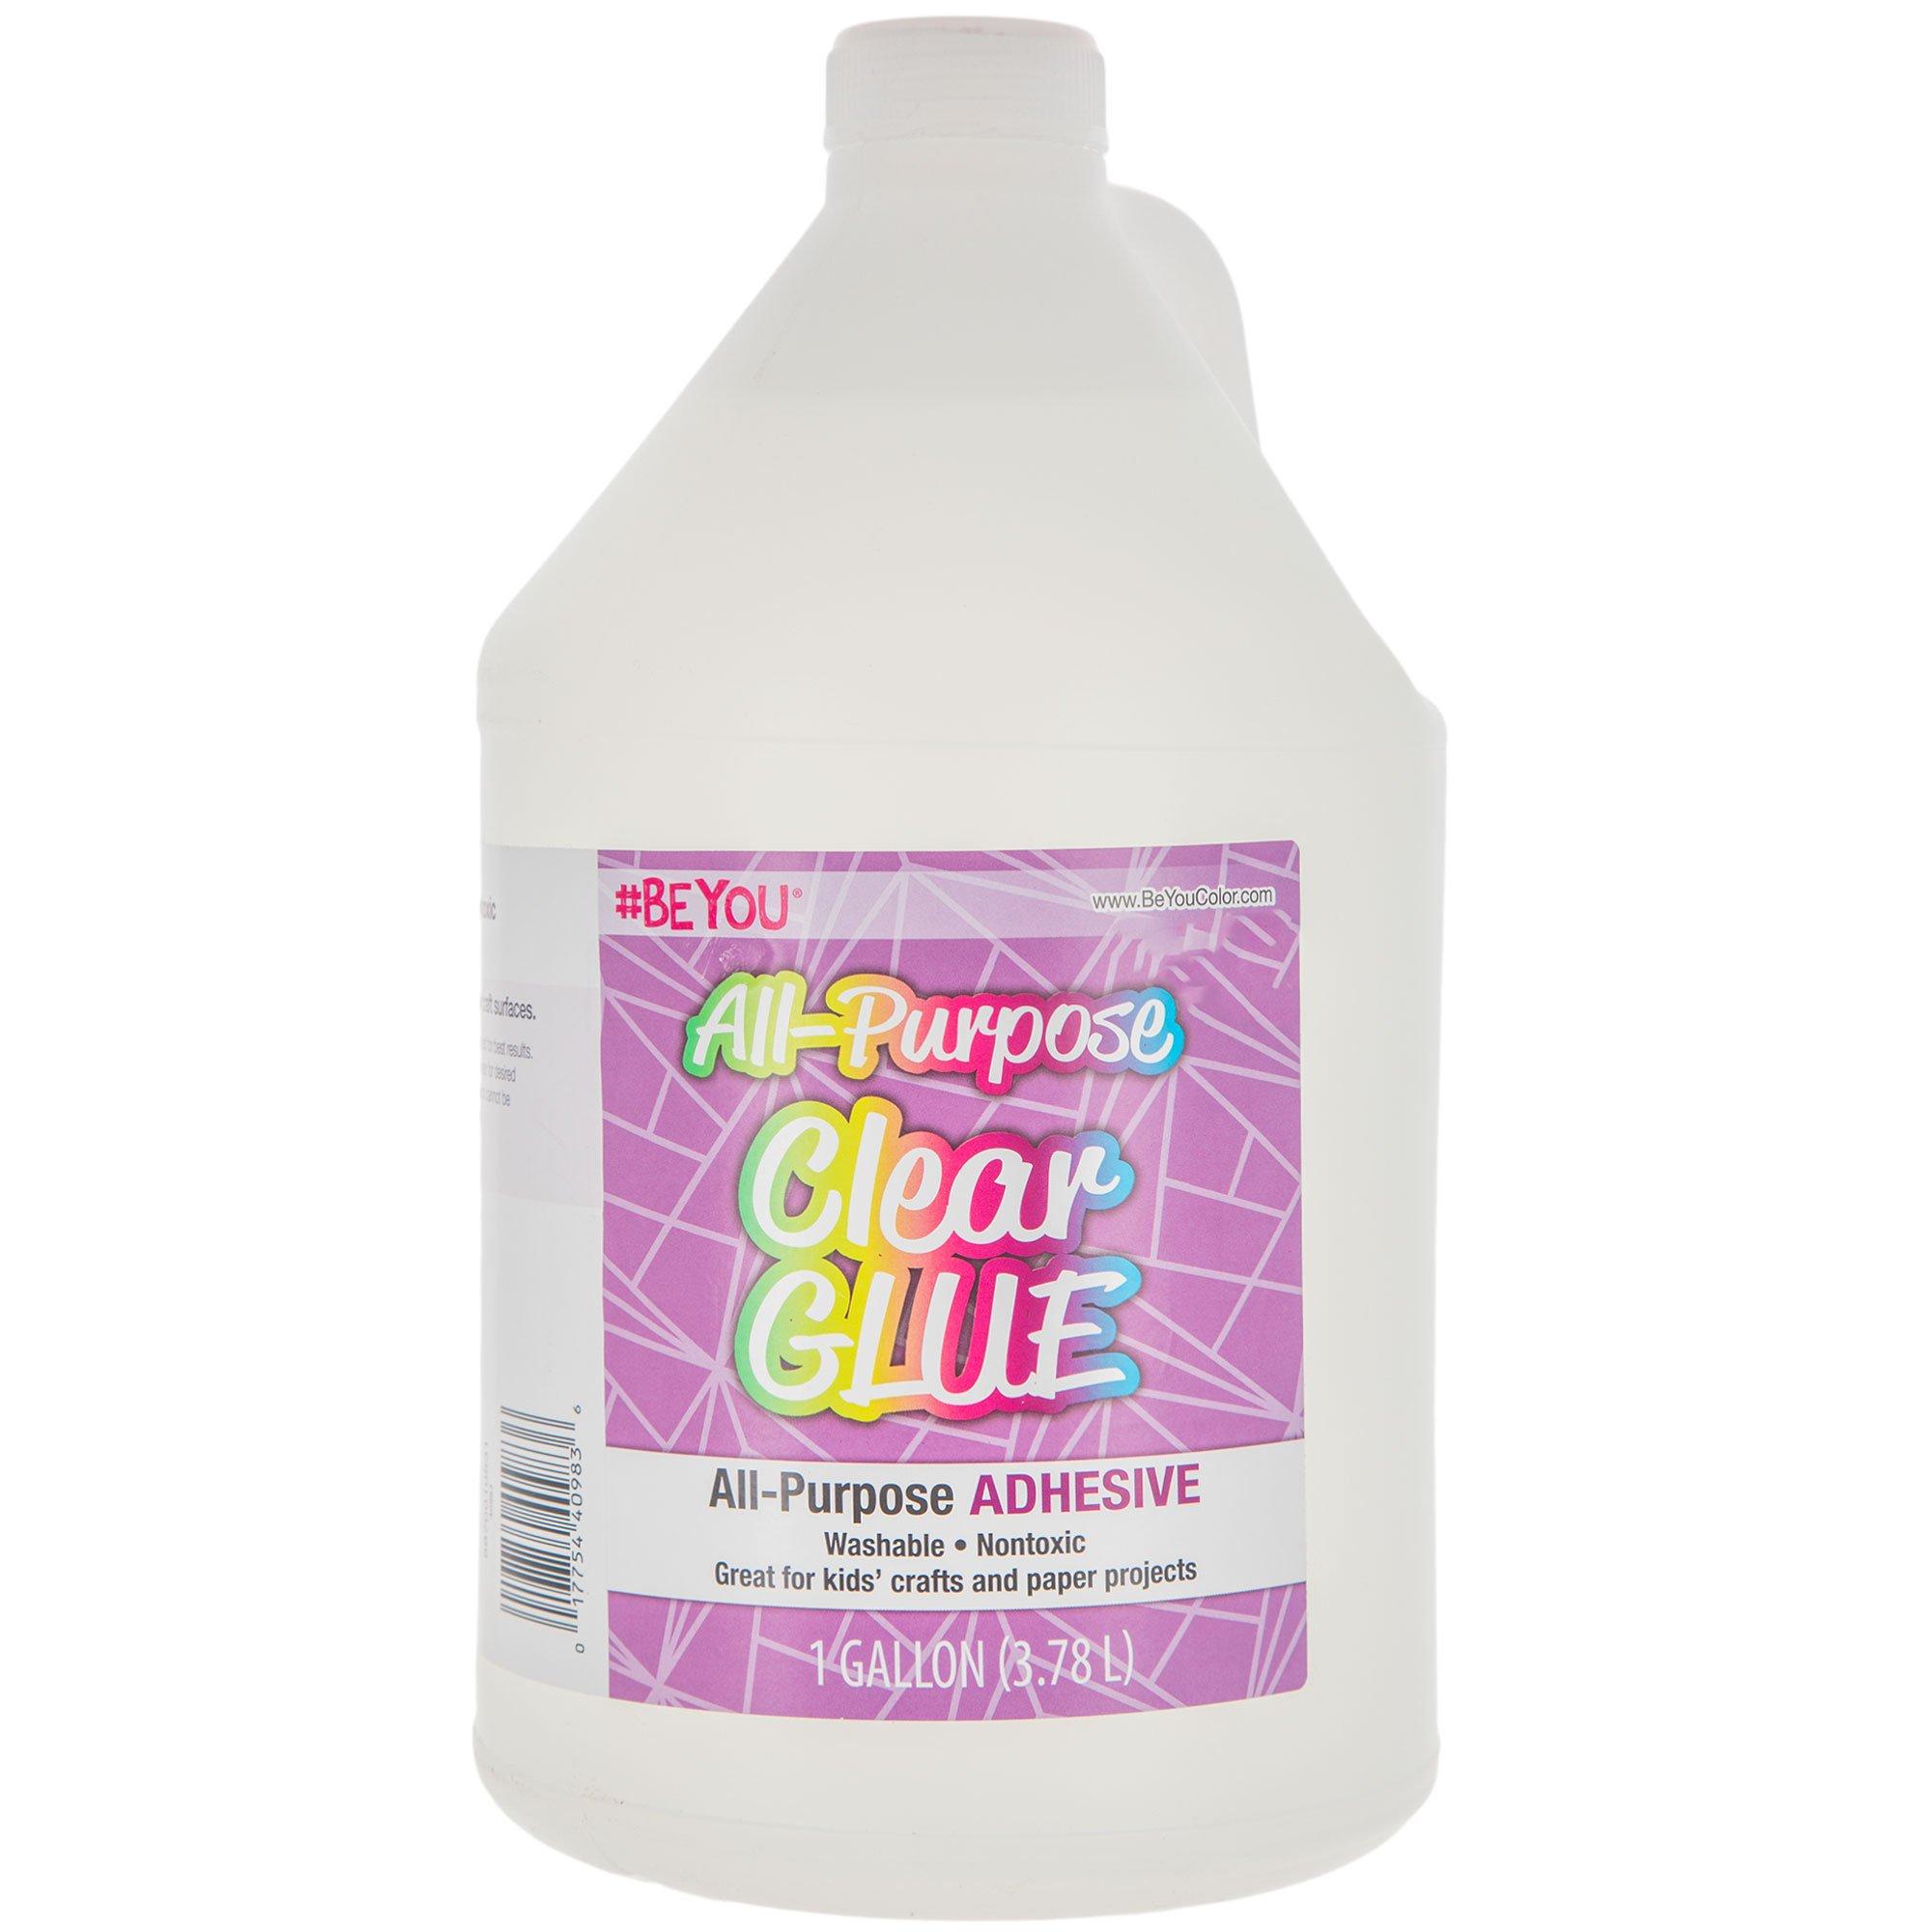 Crafty Dab'N Stic Non-Toxic Odorless School Glue, 1.75 oz Bottle